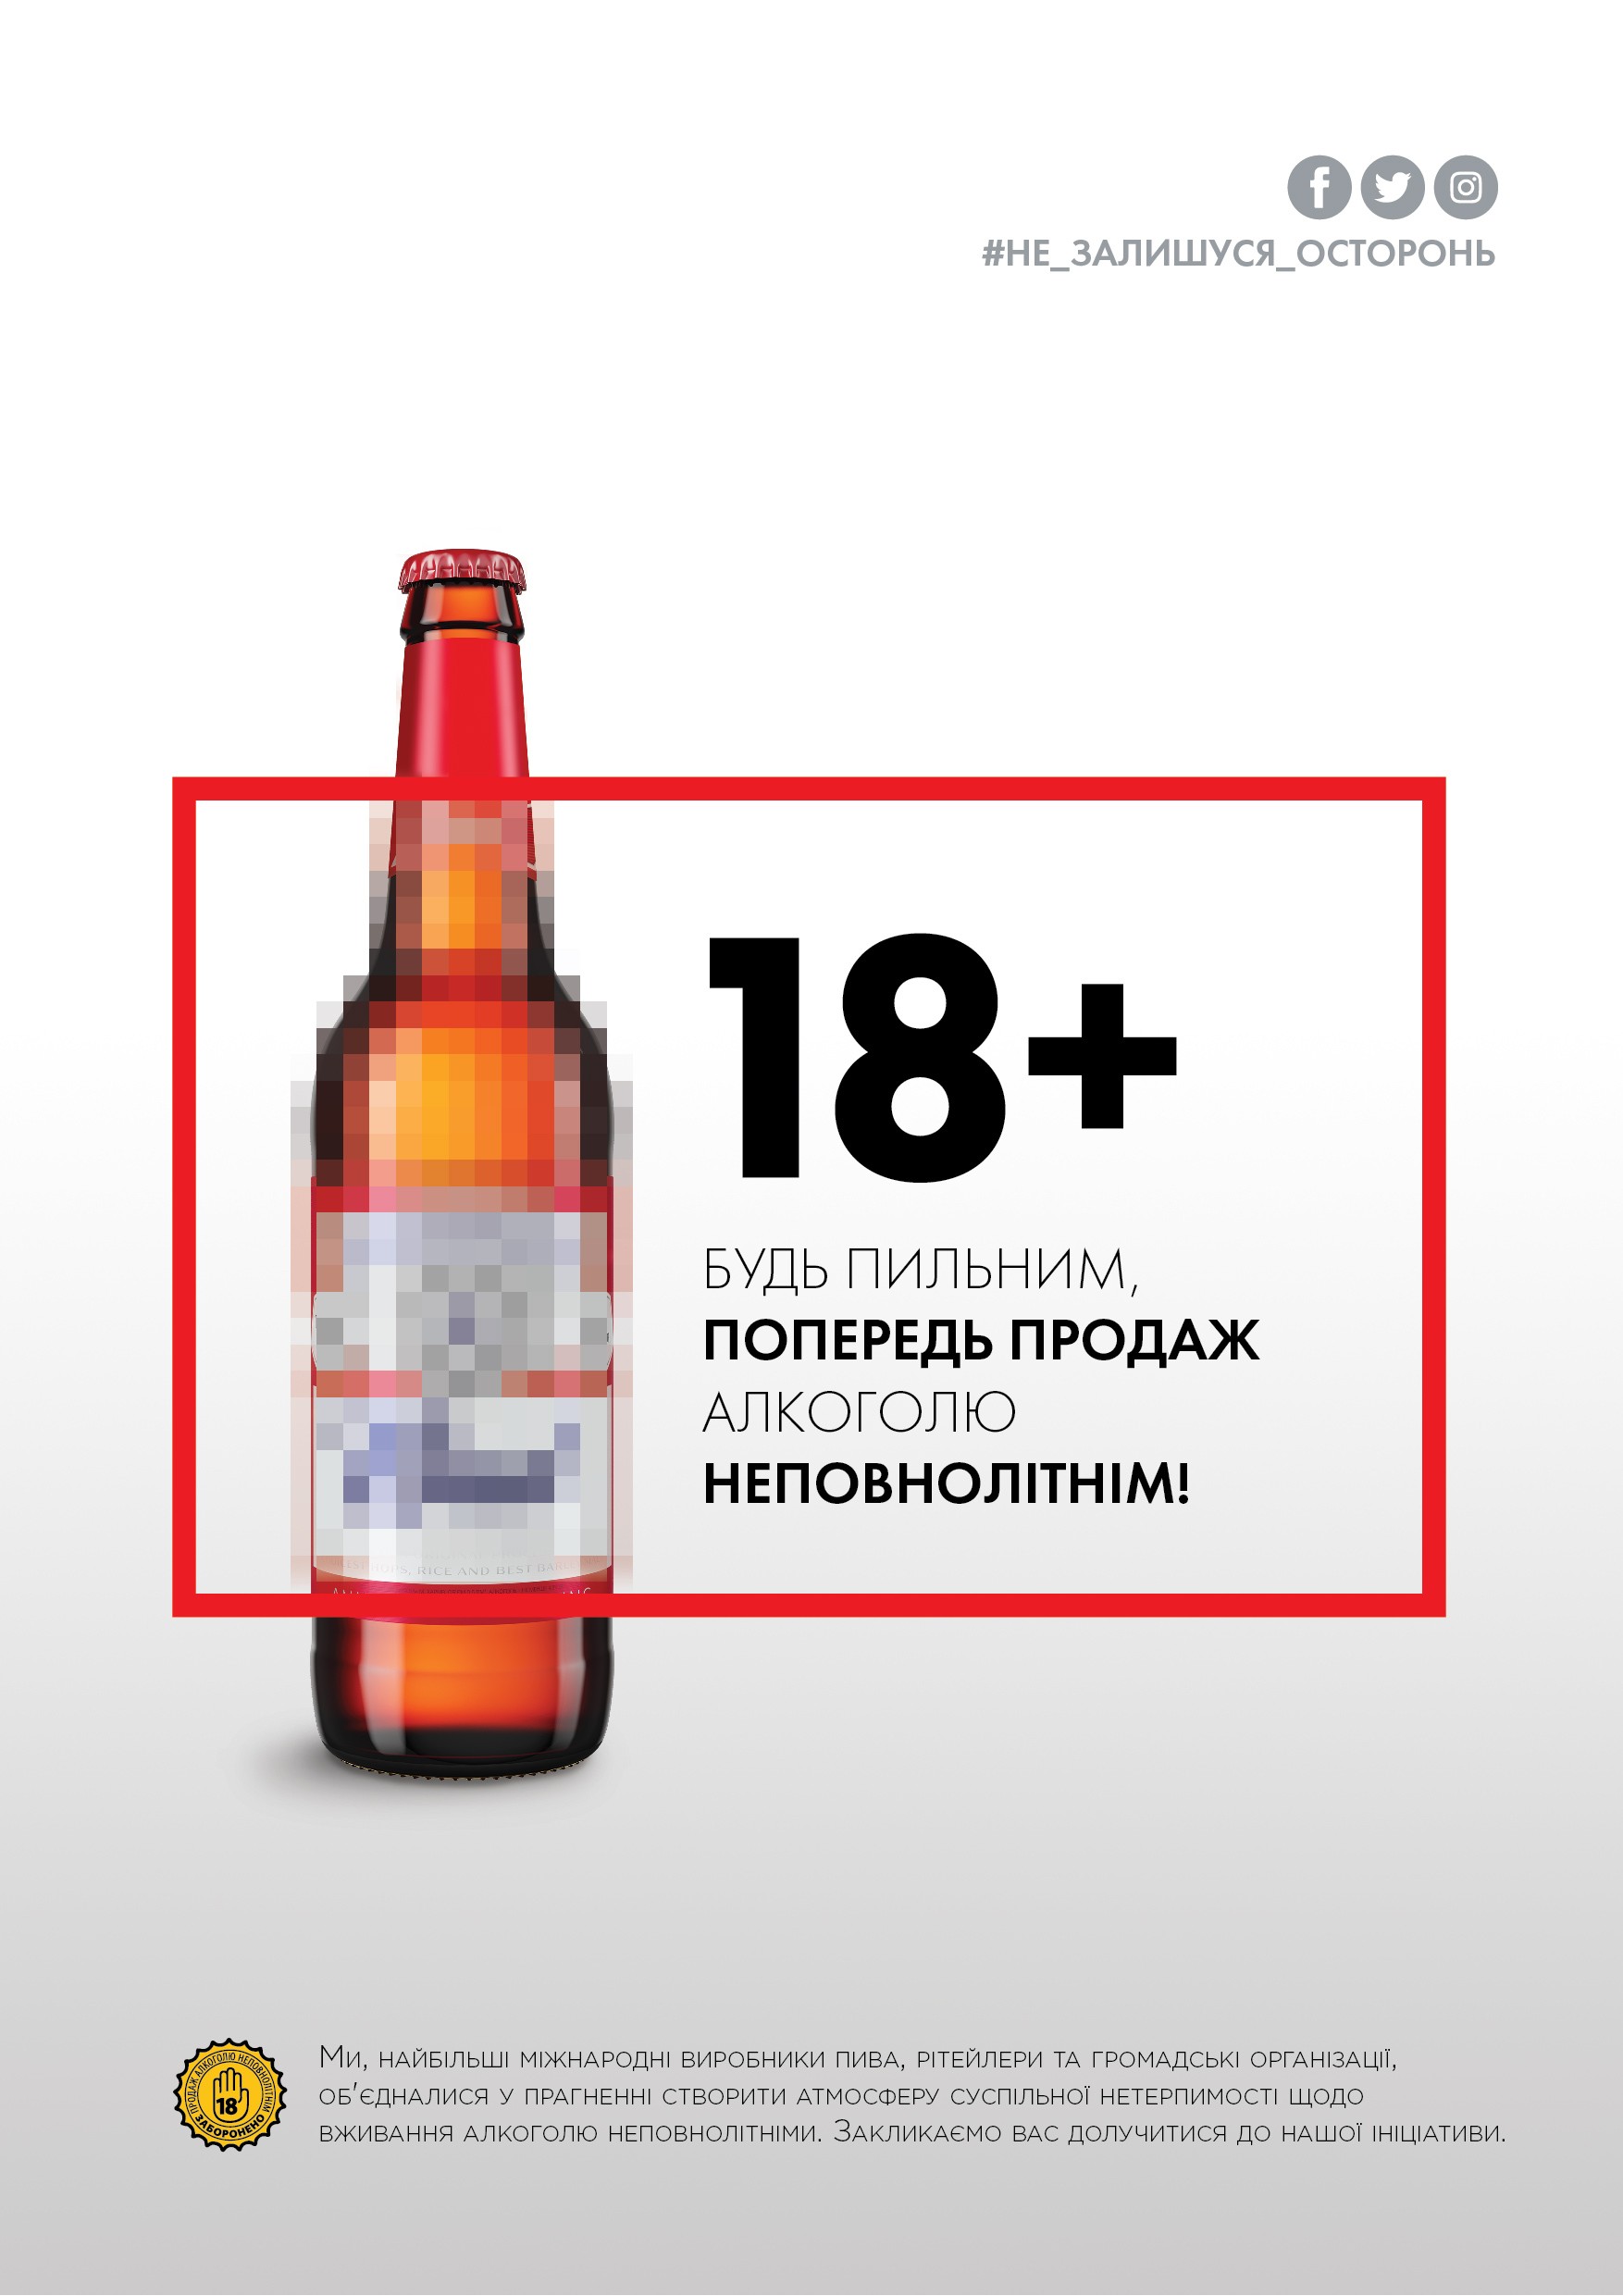 Таким чином, лідери пивоварної галузі в Україні ще раз наголосили на важливості відповідального споживання пива і нагадали про необхідність запобігання продажу алкогольних напоїв неповнолітнім